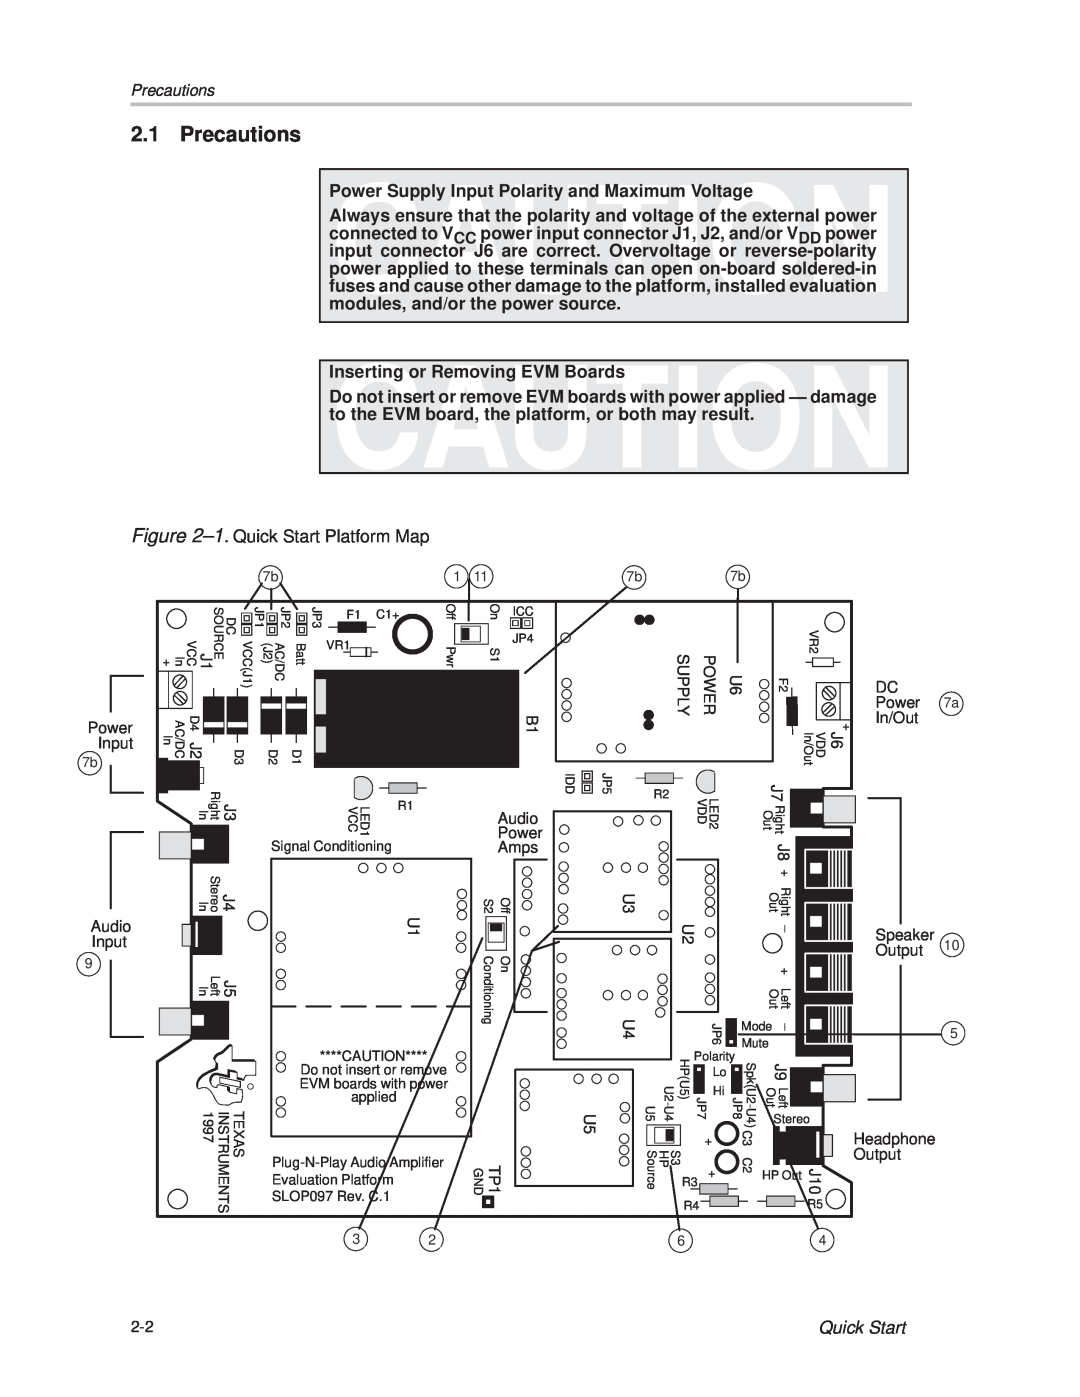 Texas Instruments TPA 311 manual Precautions 